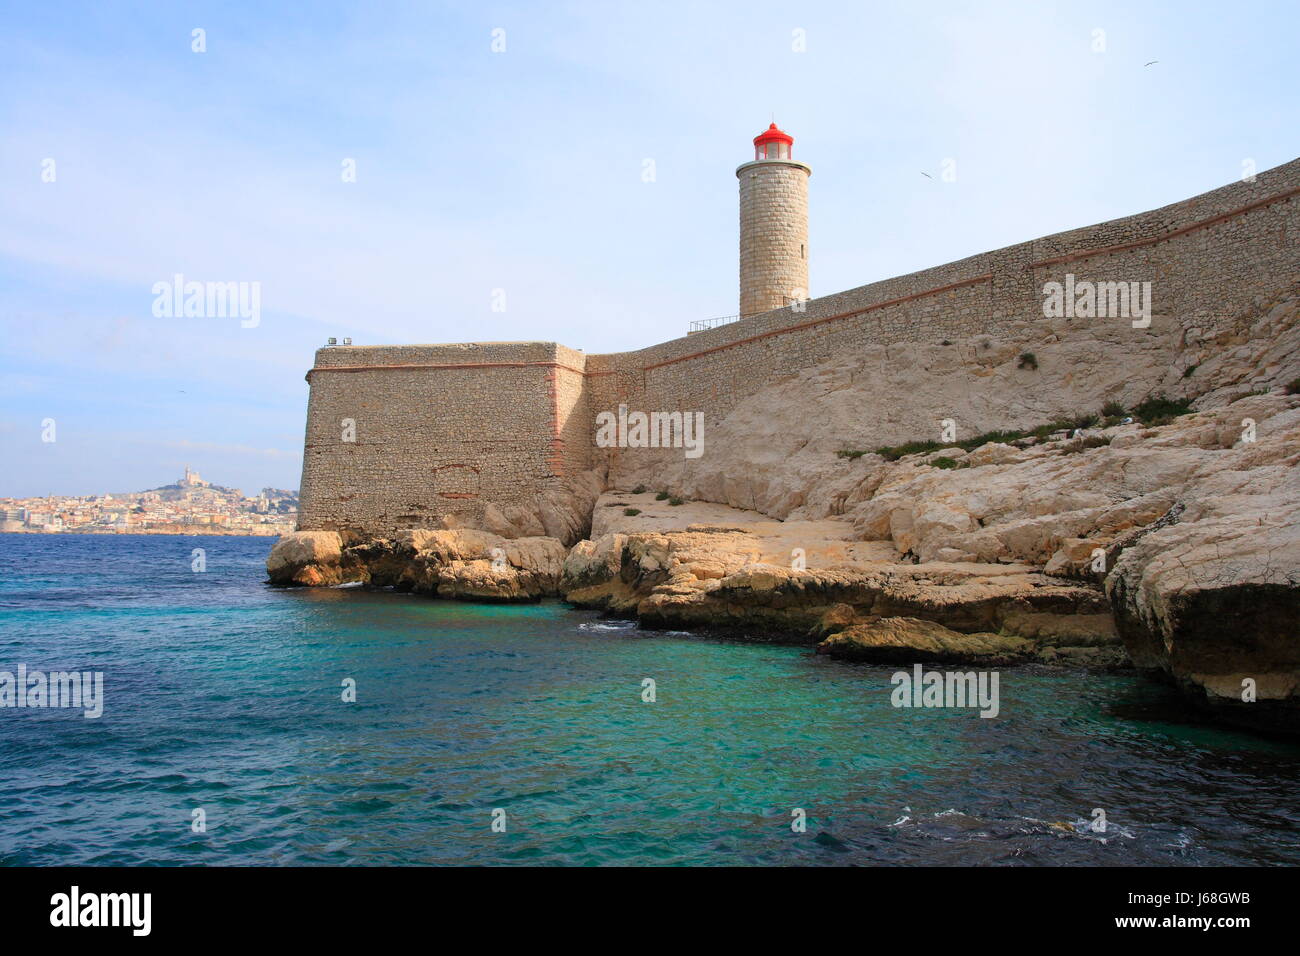 Monumento a torre turismo brig carcere Francia fortezza bay attrazione turistica Foto Stock